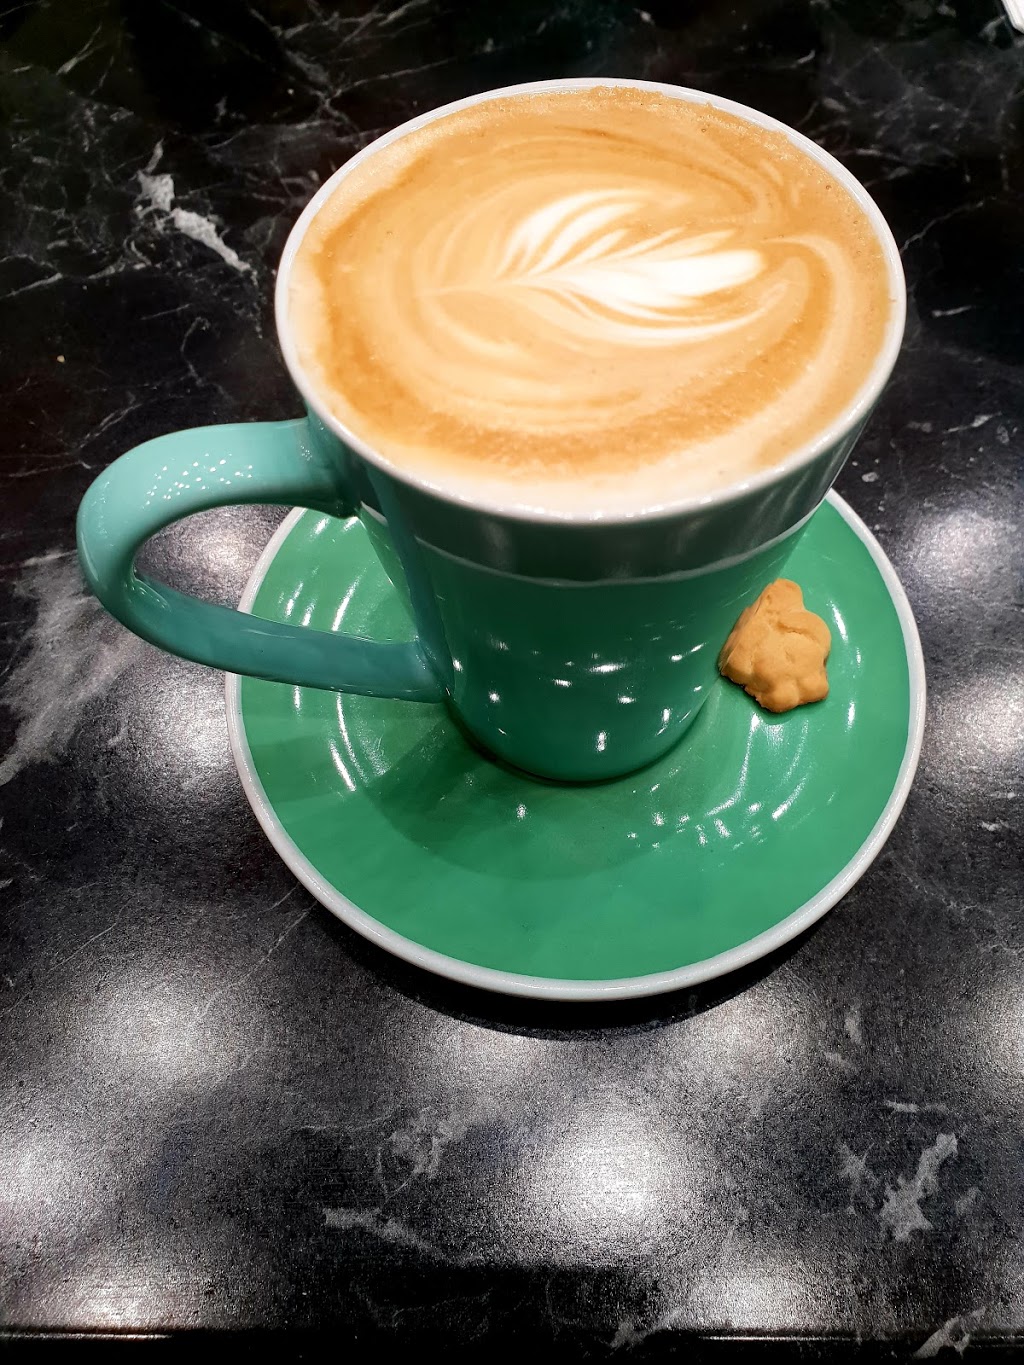 @Beans Café | cafe | Aspley QLD 4034, Australia